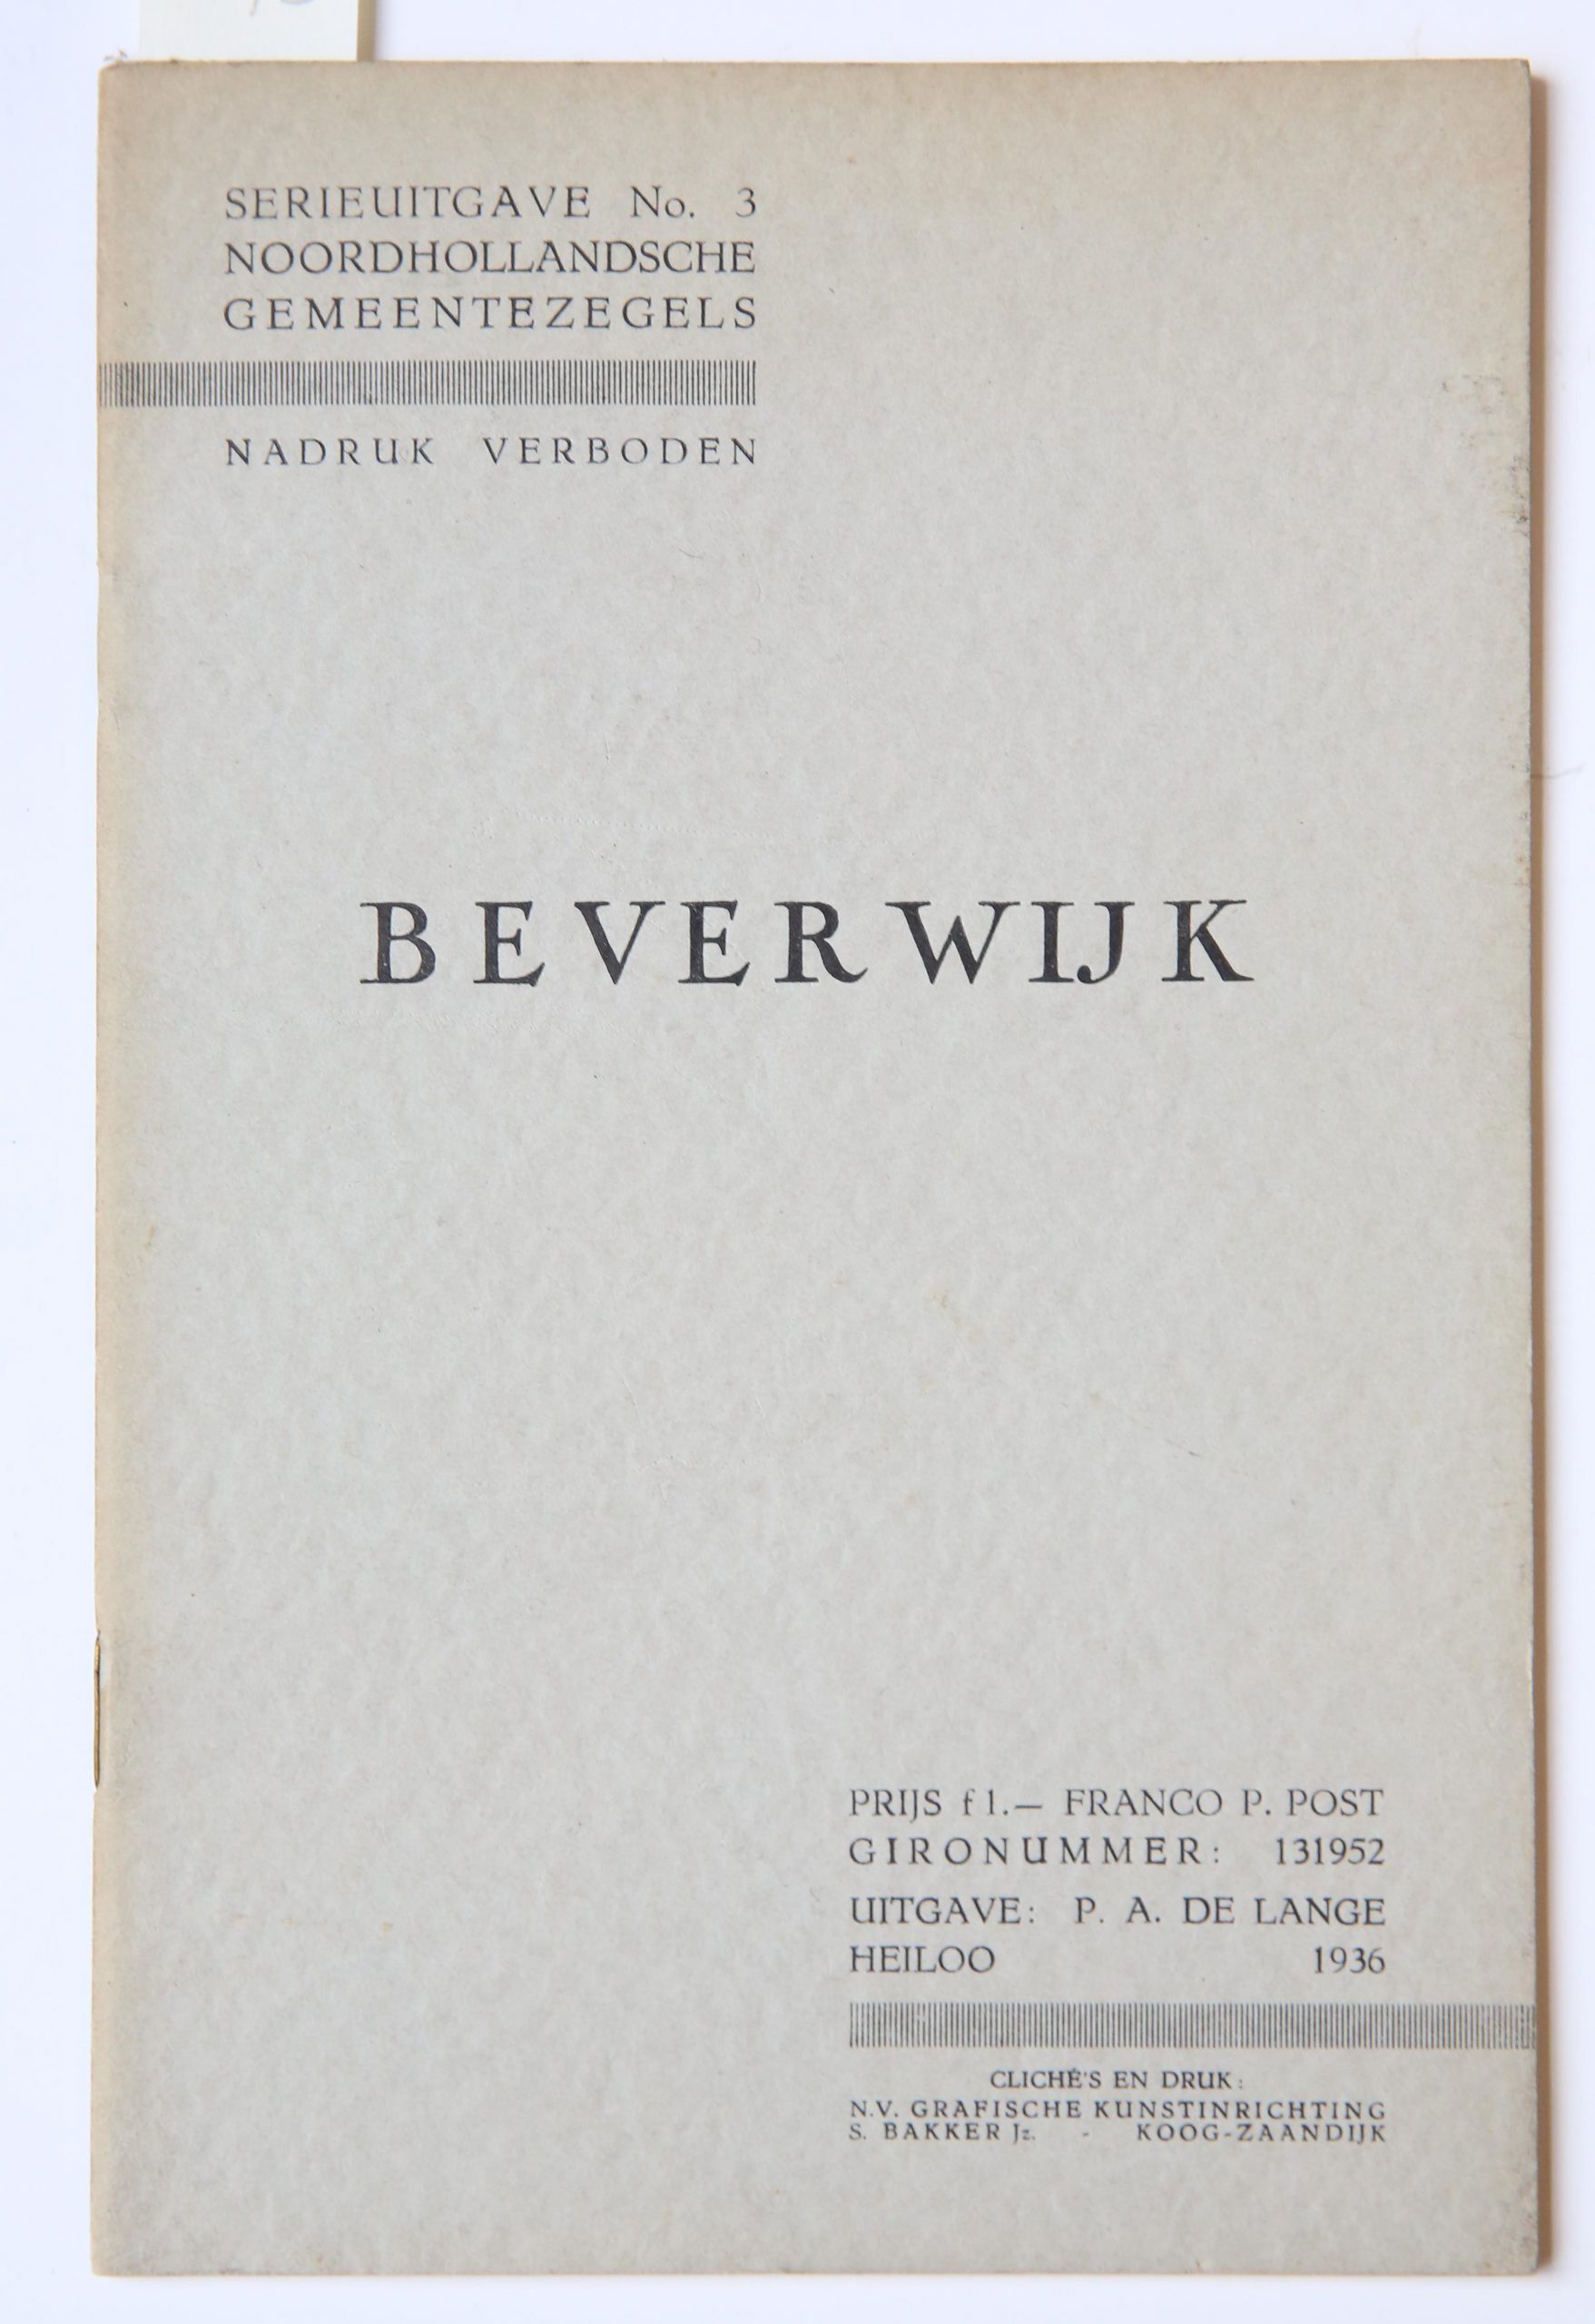 [NOORDHOLLANDSCHE GEMEENTEZEGELS] - Noordhollandsche Gemeentezegels. Serie-uitgave. Heiloo: P.A. de Lange, 1934-. Deel 3. Beverwijk. Heiloo 1935, gell., 29 p.